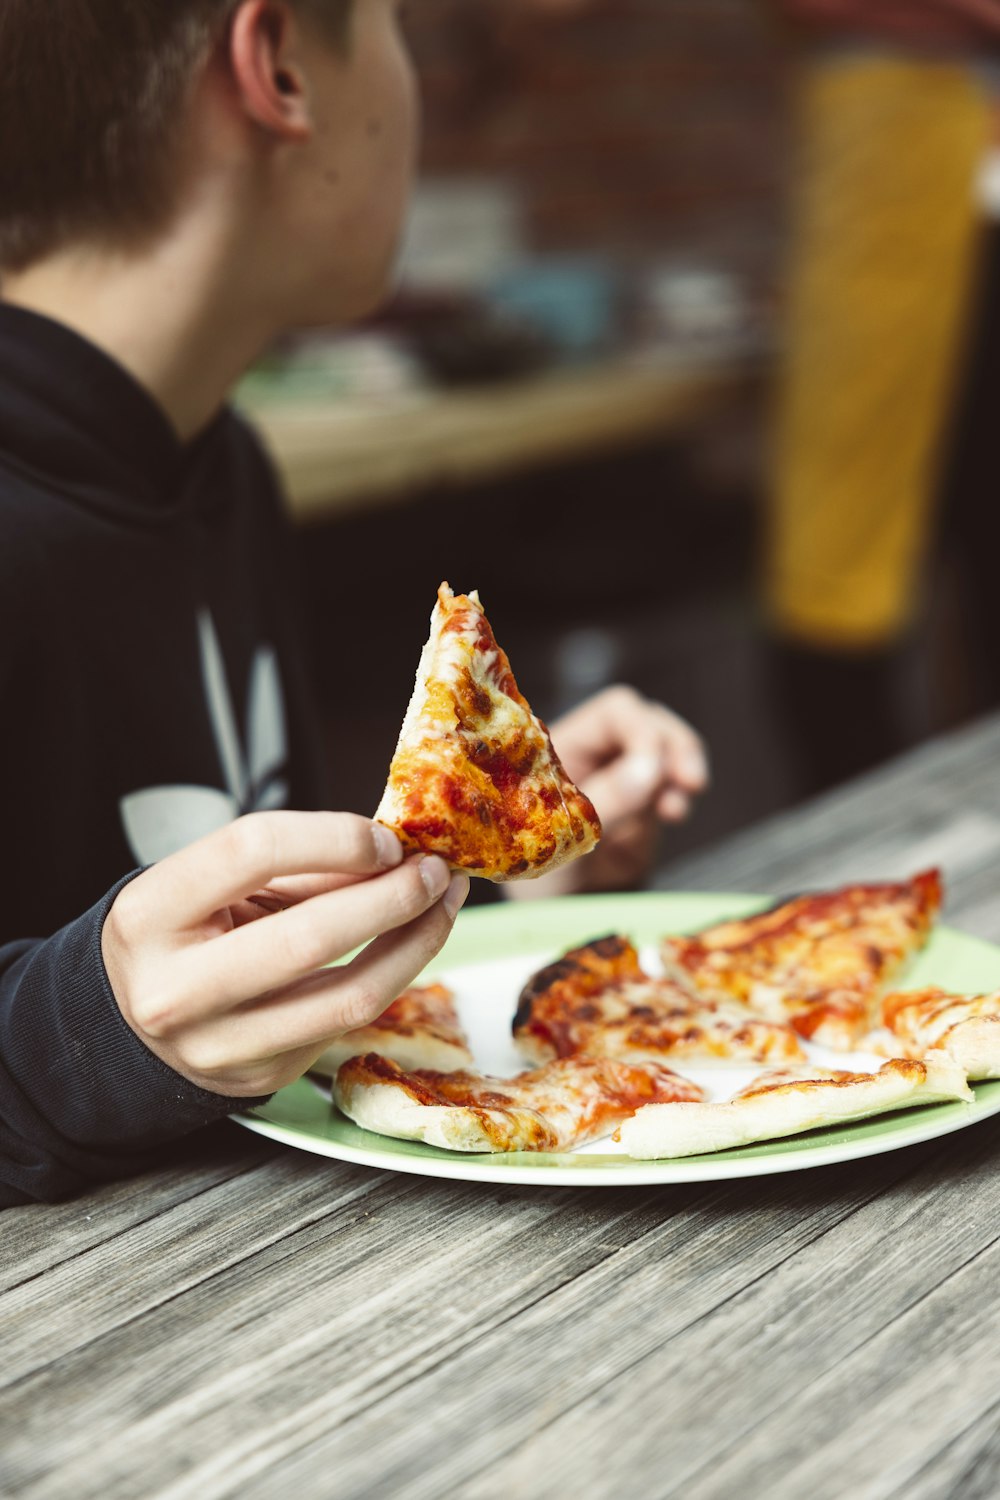 une personne mangeant une part de pizza dans une assiette